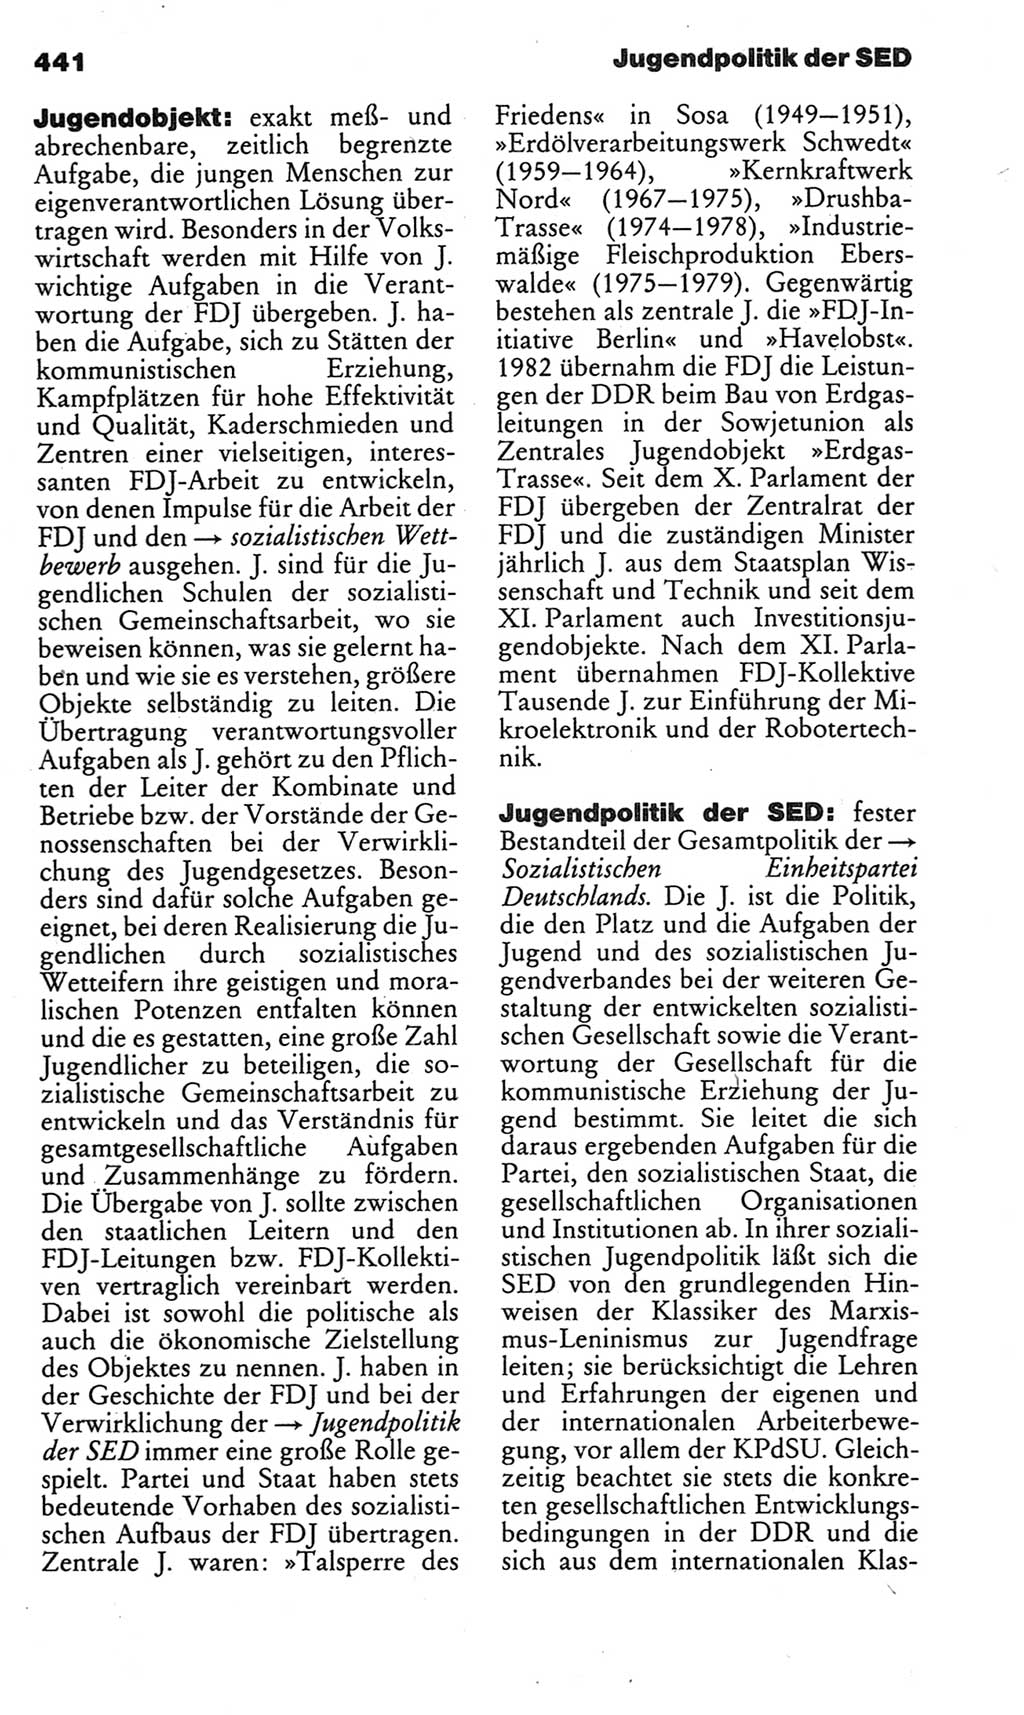 Kleines politisches Wörterbuch [Deutsche Demokratische Republik (DDR)] 1983, Seite 441 (Kl. pol. Wb. DDR 1983, S. 441)